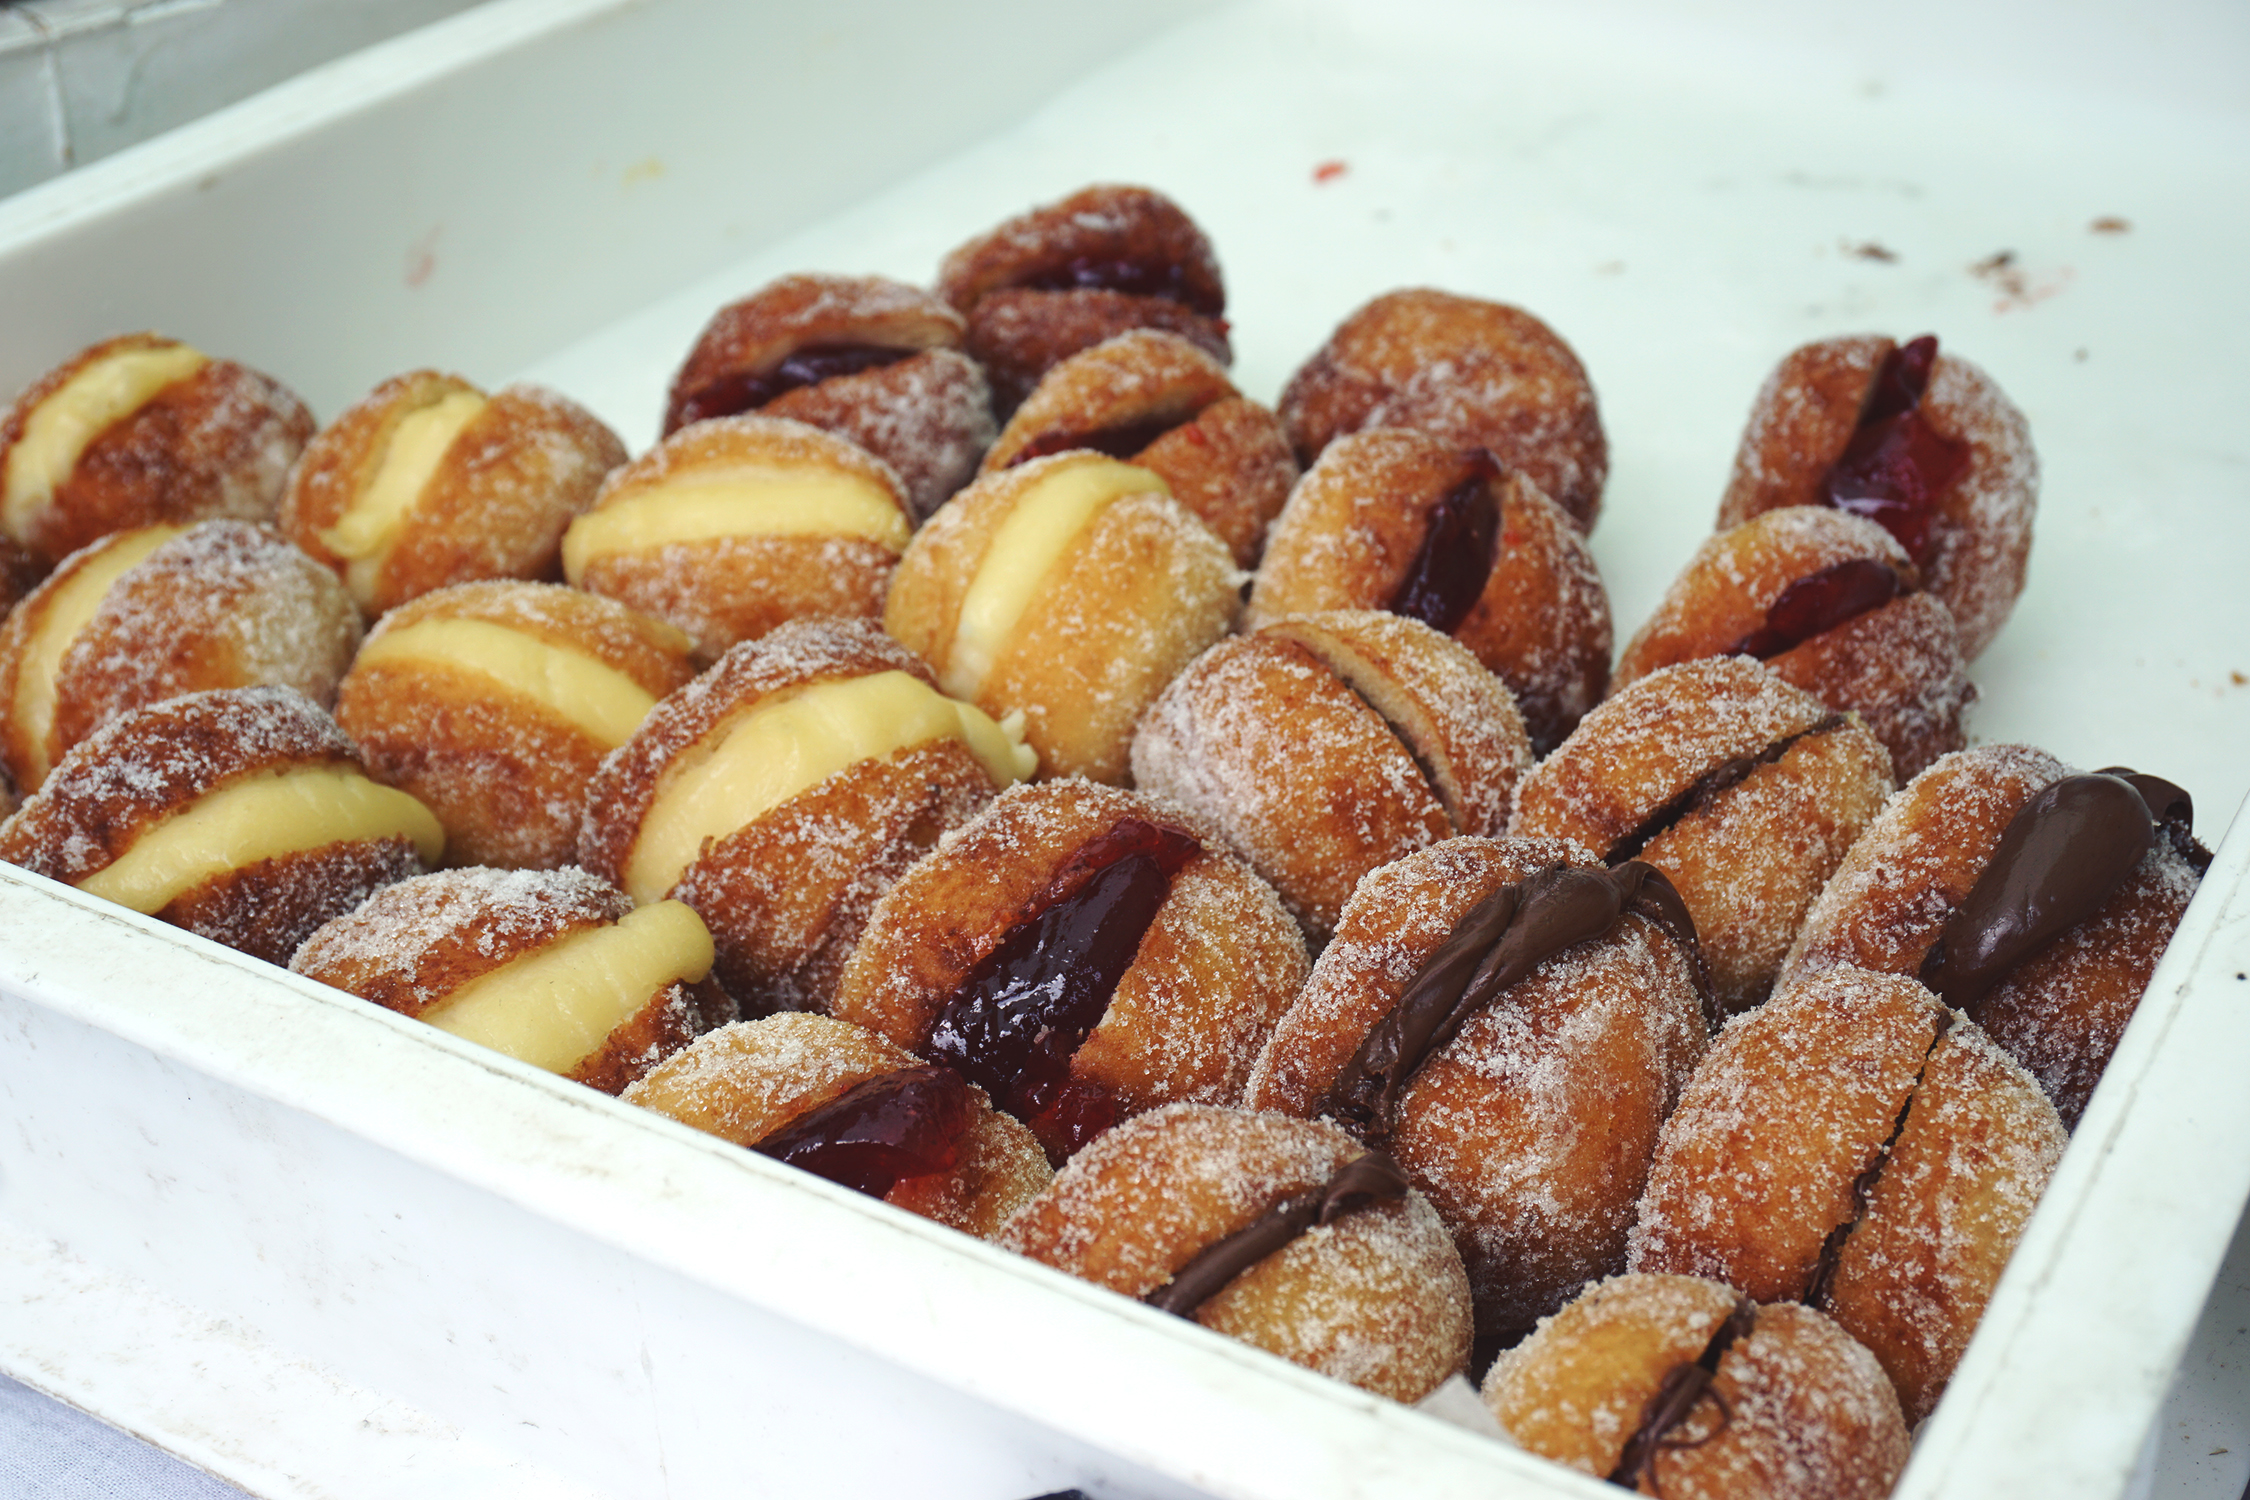 Gluten free doughnuts from Floris Foods | Floris Bakery | gluten free Broadway Market guide | Hackney, London